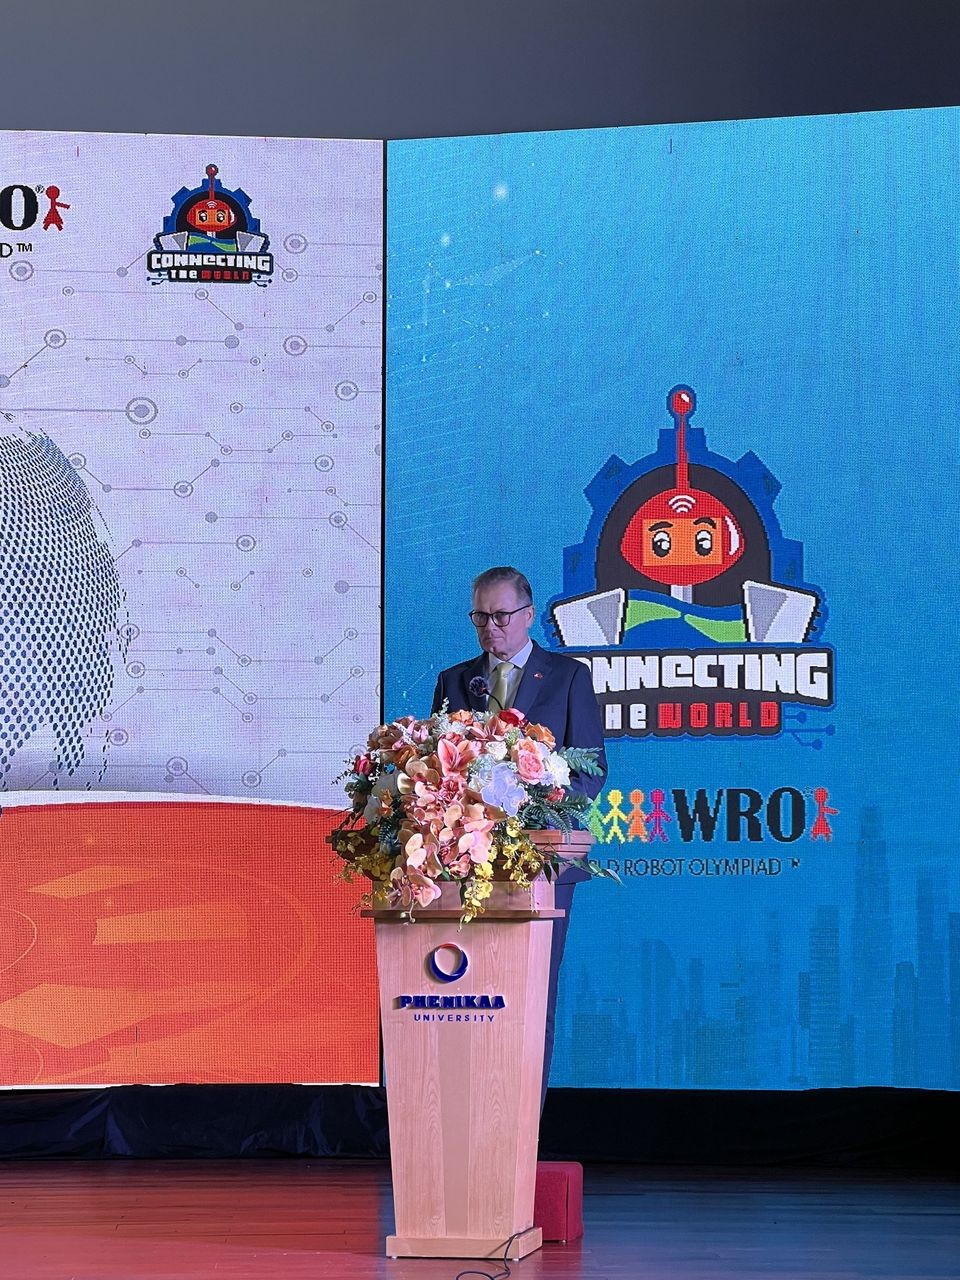 Phát động cuộc thi Robot thế giới ROBOTACON WRO 2023 tại Việt Nam